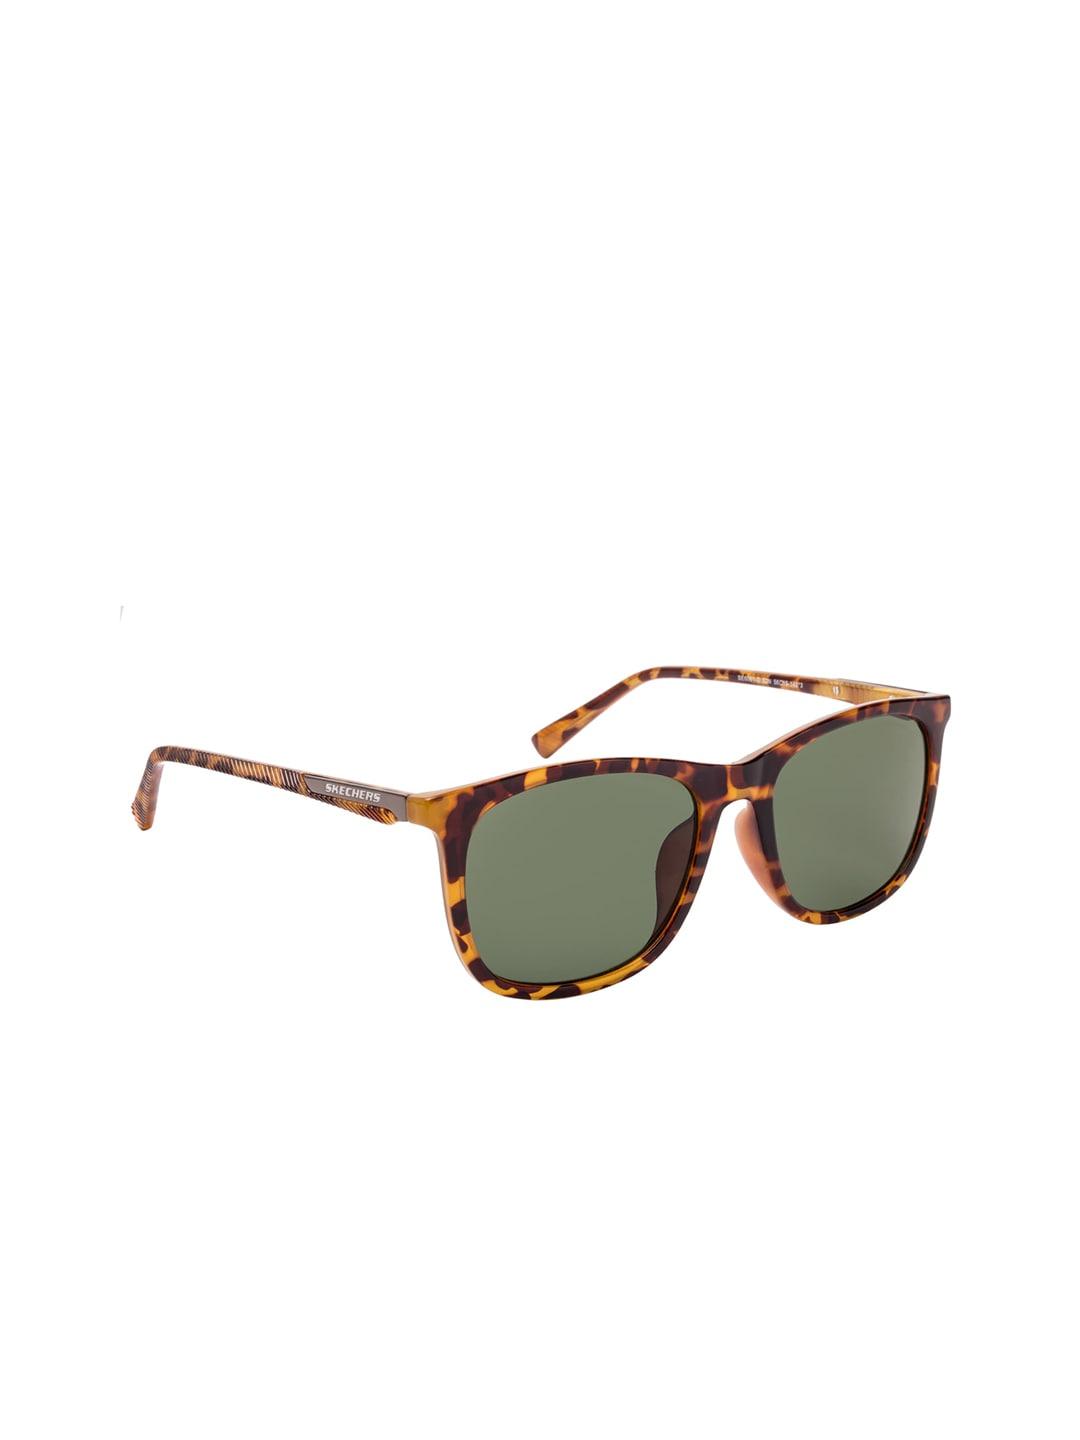 skechers-men-green-rectangle-uv-protected-sunglasses-se6061-d-56-52n